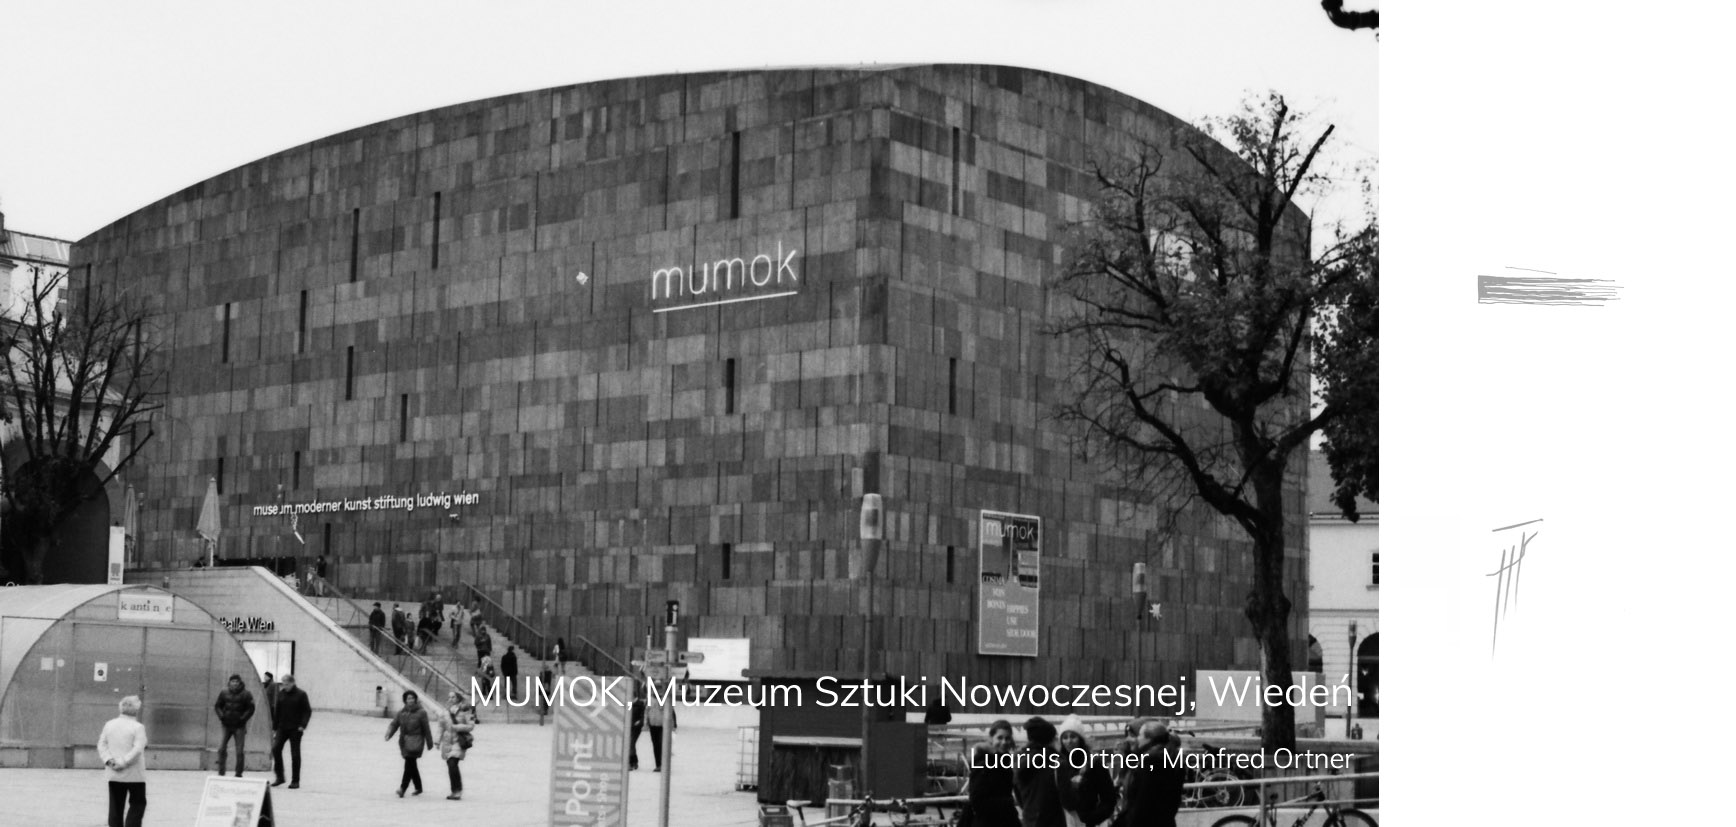 MUMOK Muzeum Sztuki Nowoczesnej, Wiedeń